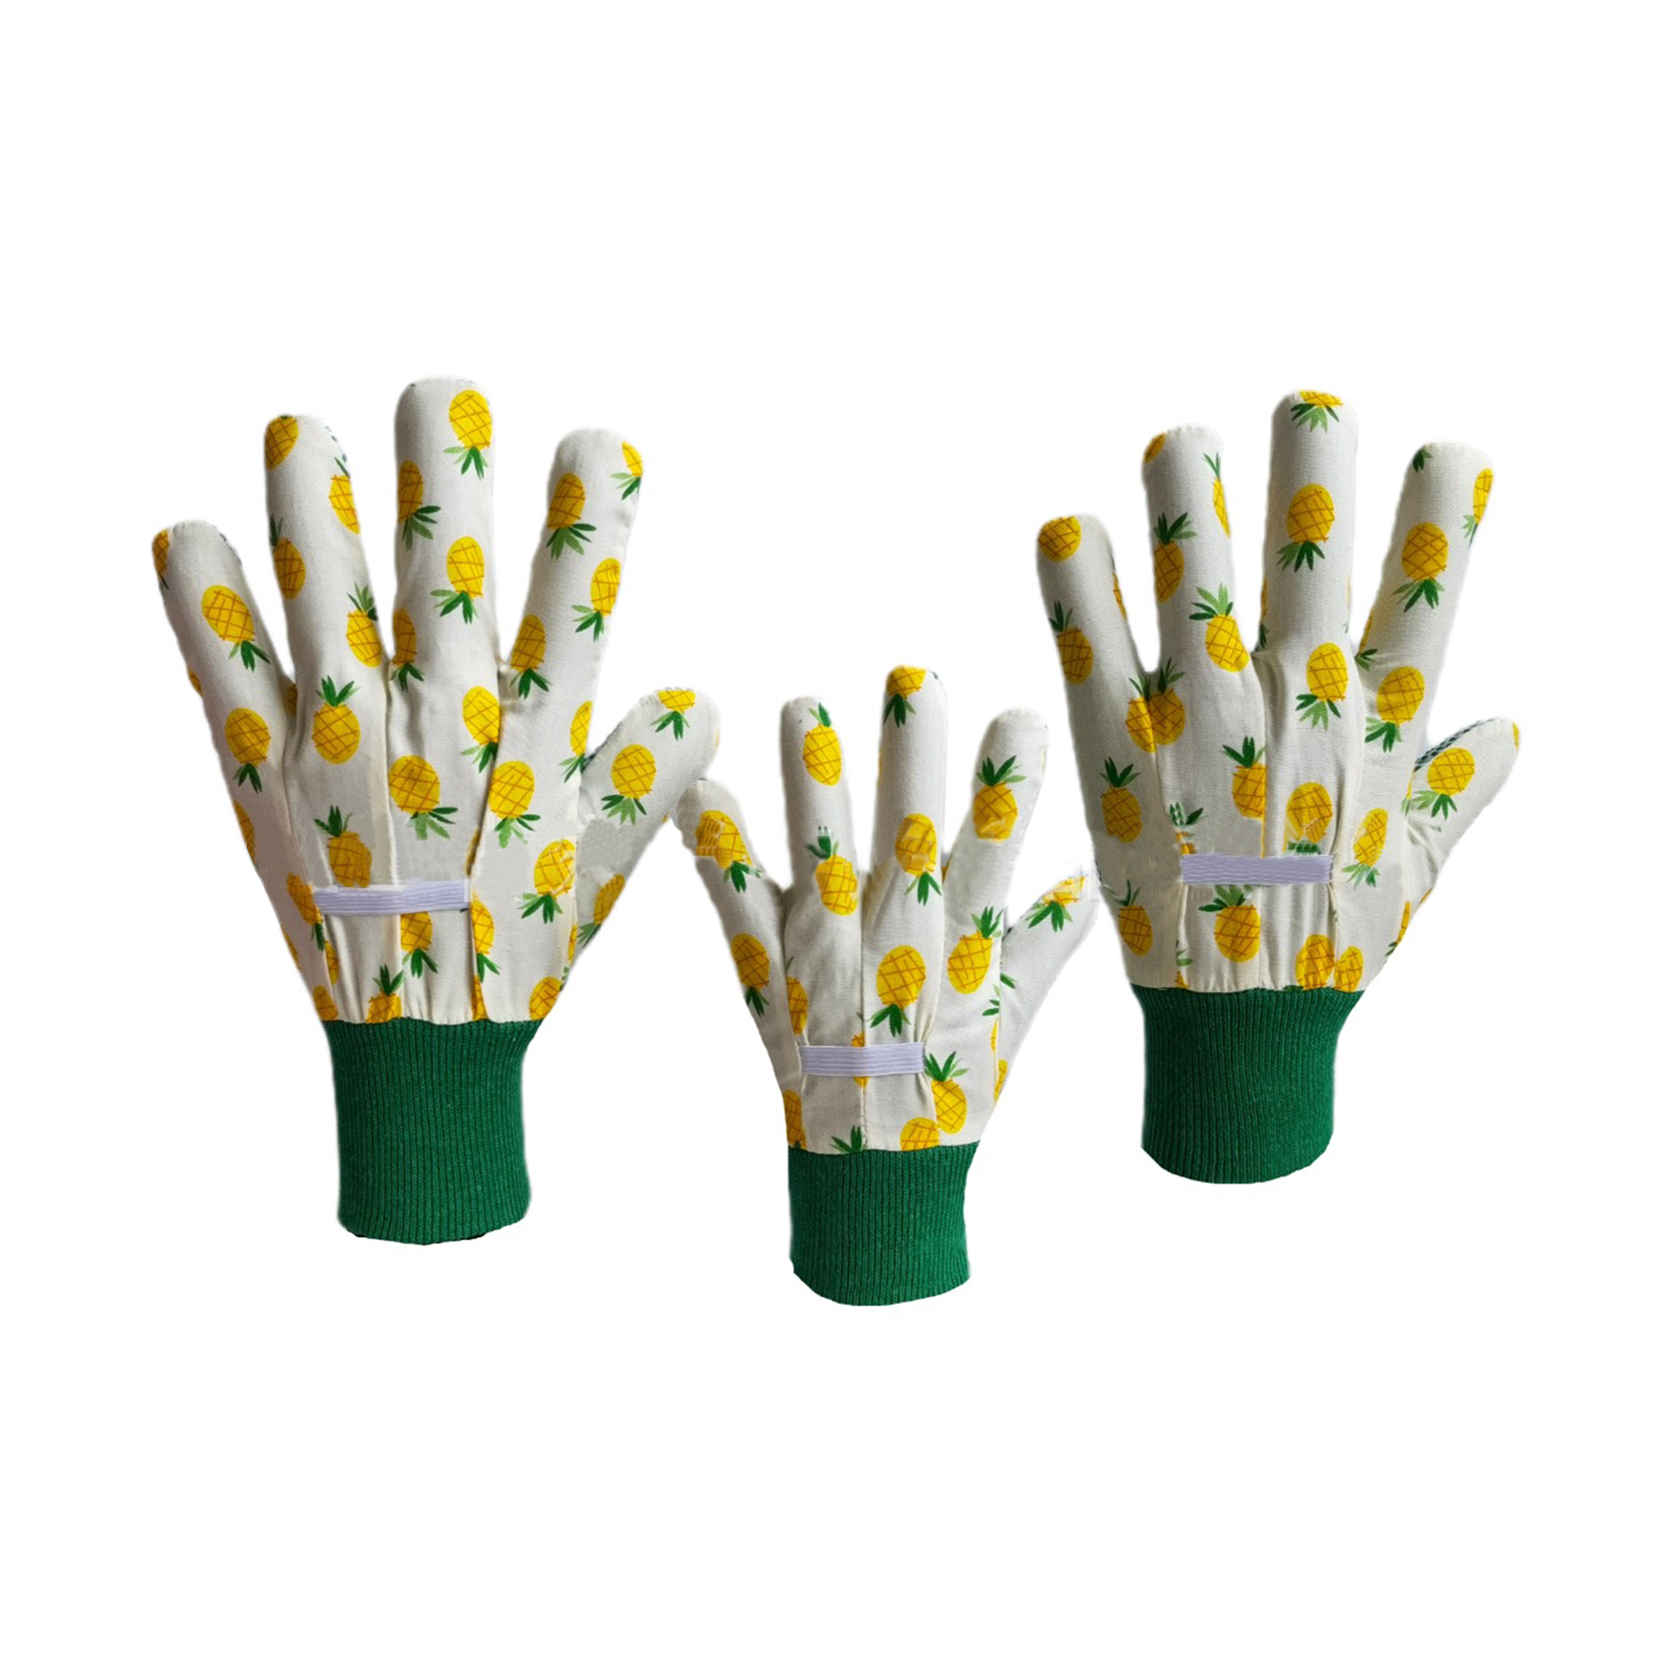 Јефтине 100% памучне баштенске рукавице од ПВЦ-а, памучне баштенске рукавице унисекс